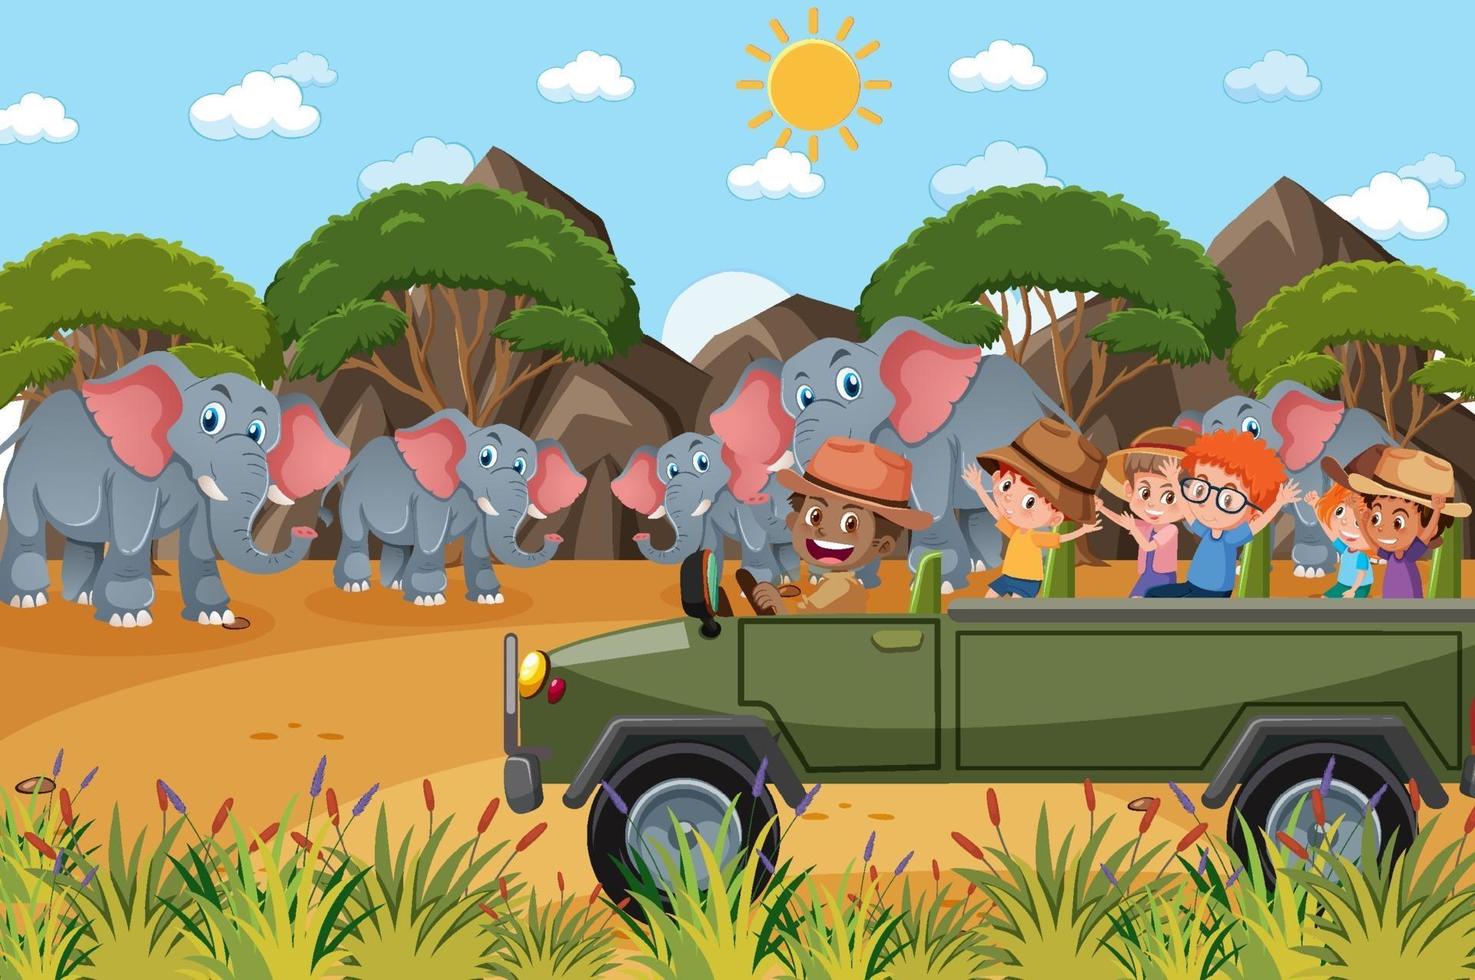 Kinder auf Touristenauto beobachten Elefantengruppe in der Zooszene vektor